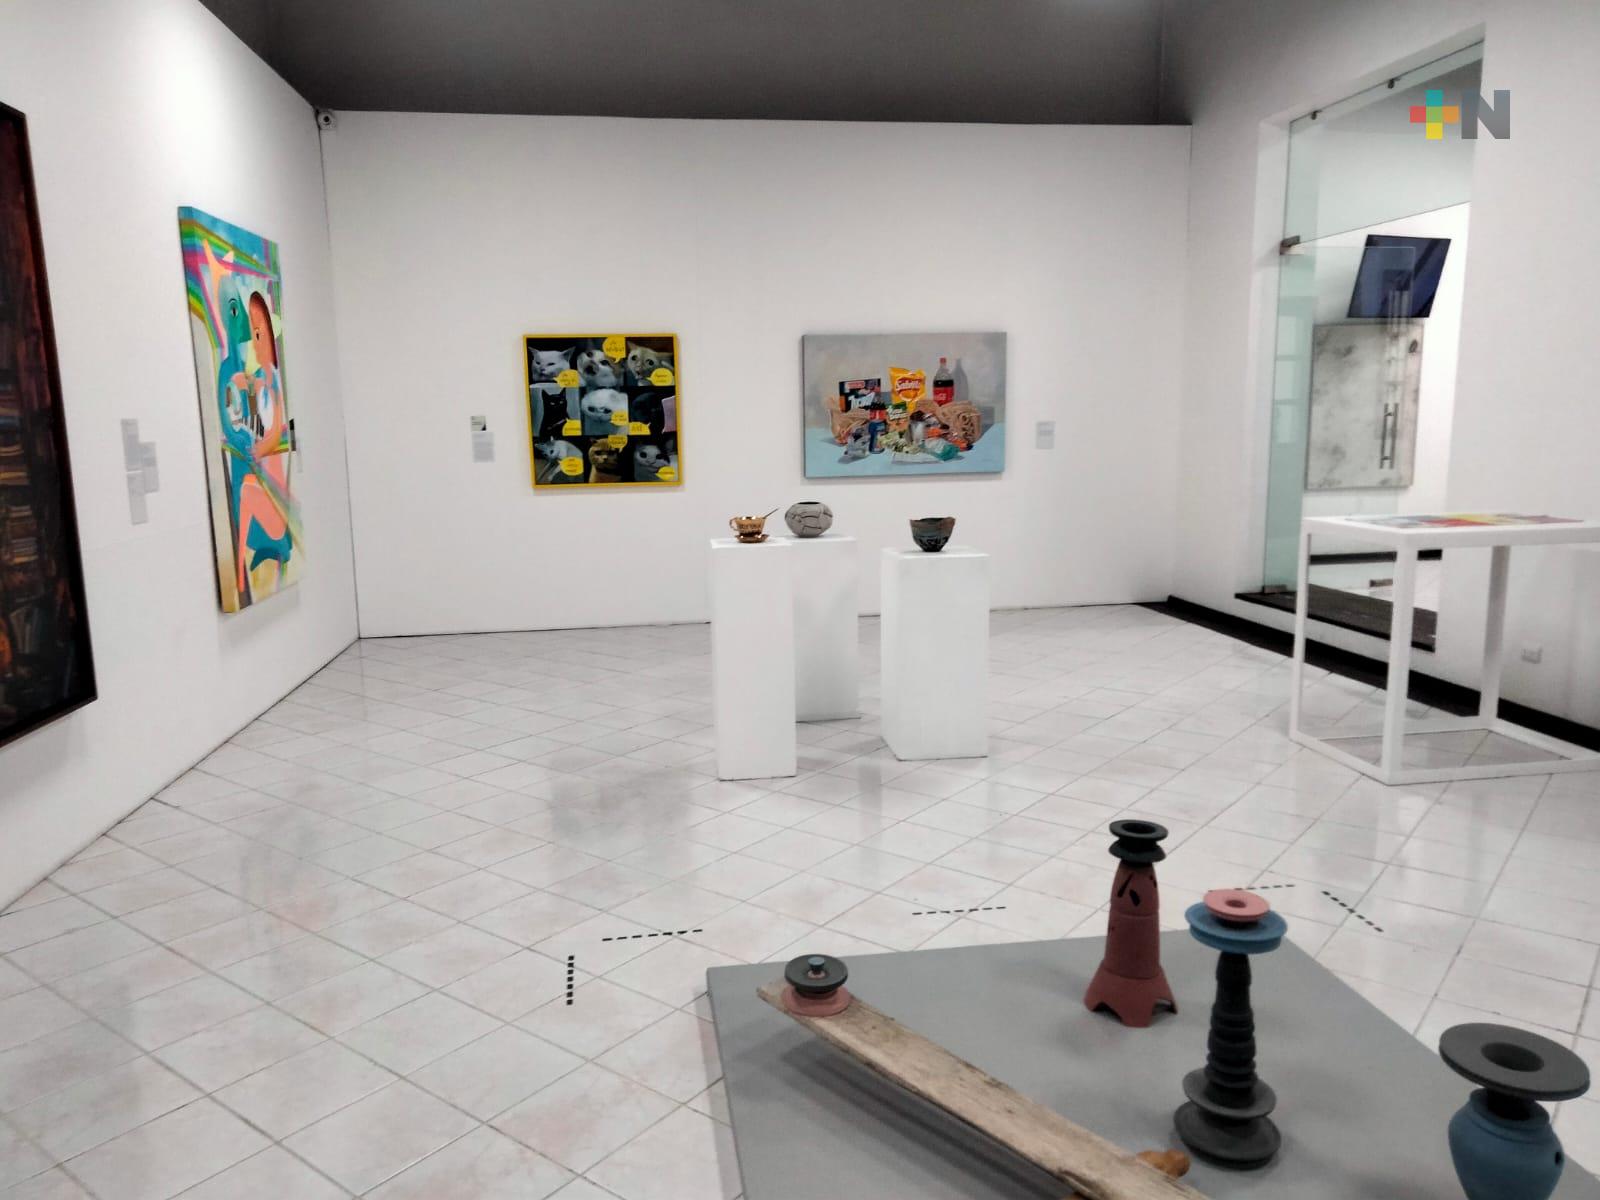 Galería de Arte Contemporáneo de Xalapa abrirá 24 y 31 de diciembre